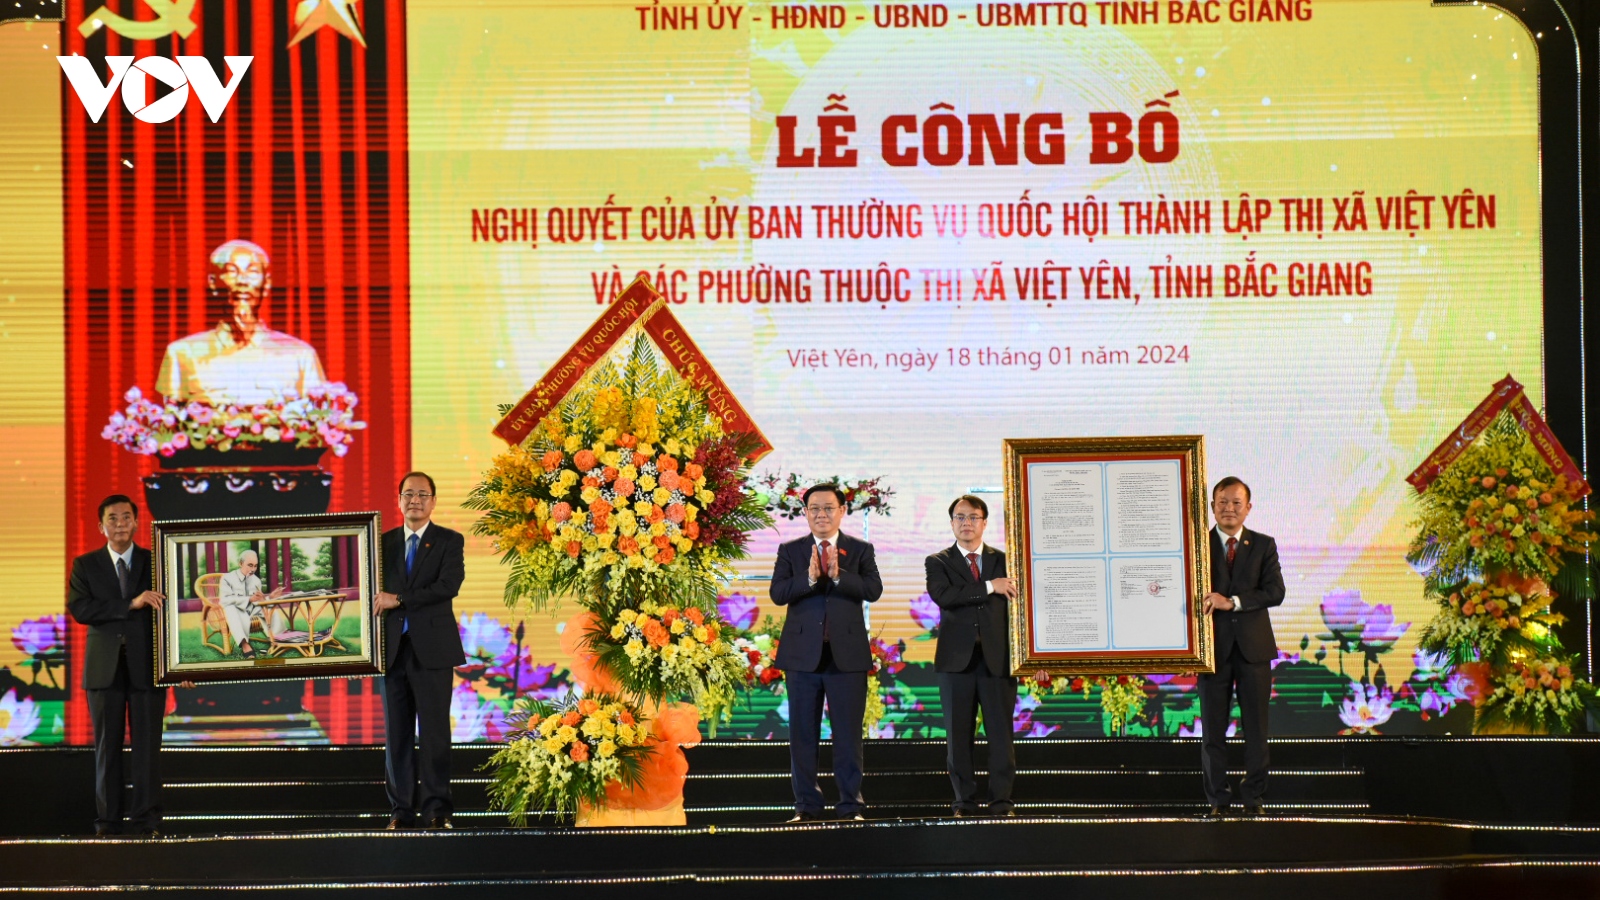 Chủ tịch Quốc hội dự lễ công bố thành lập thị xã Việt Yên, Bắc Giang